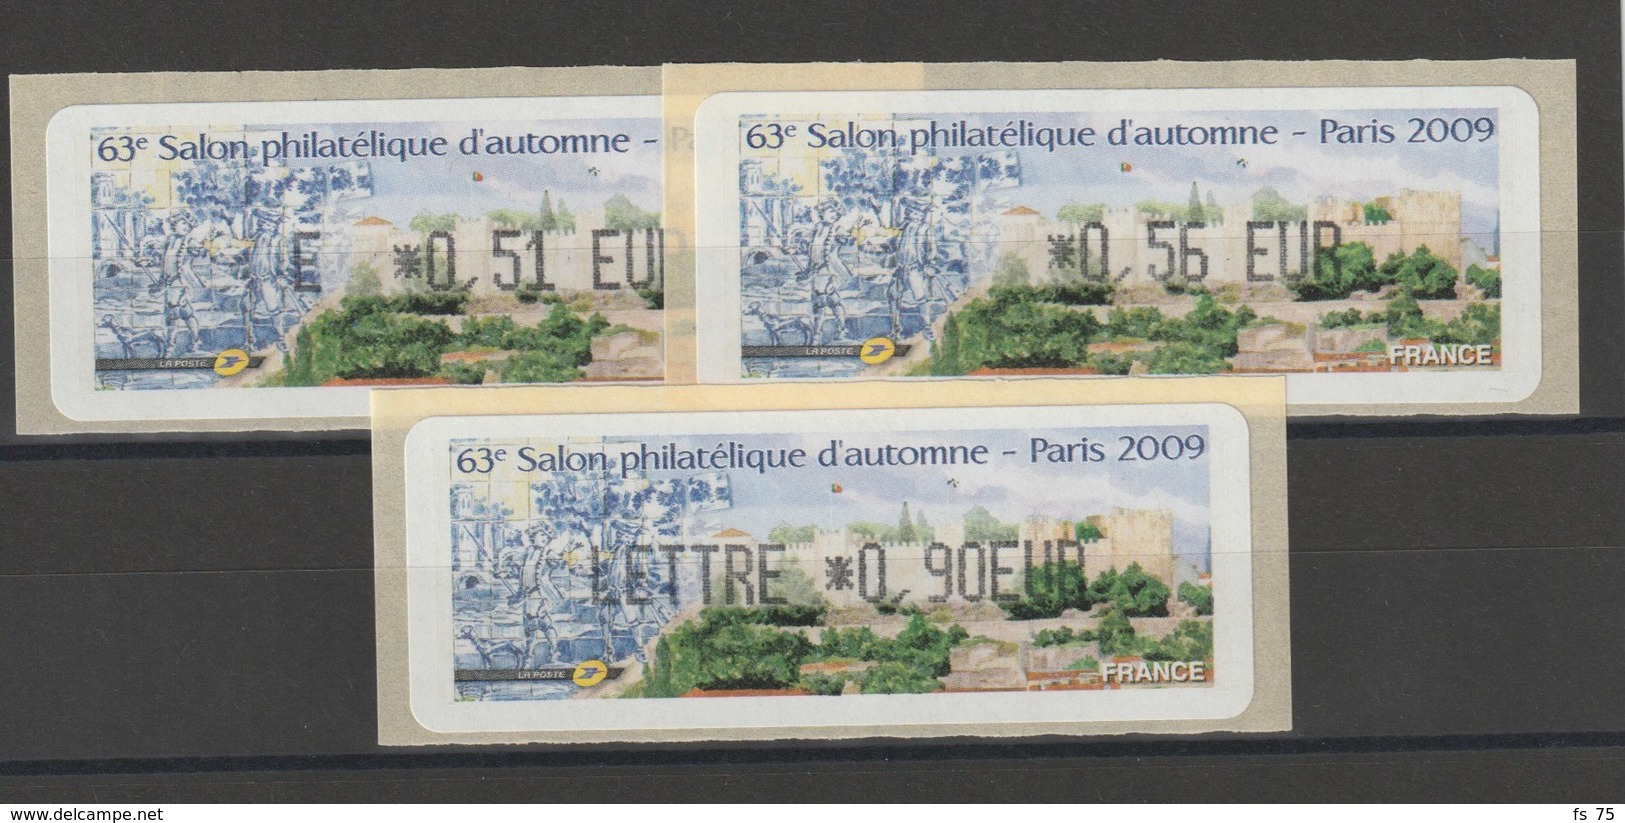 FRANCE - 3 VIGNETTES 0,51€, 0,56€ ET 0,90€ - 63E SALON PHILATELIQUE D'AUTOMNE - PARIS 2009 - 1999-2009 Geïllustreerde Frankeervignetten